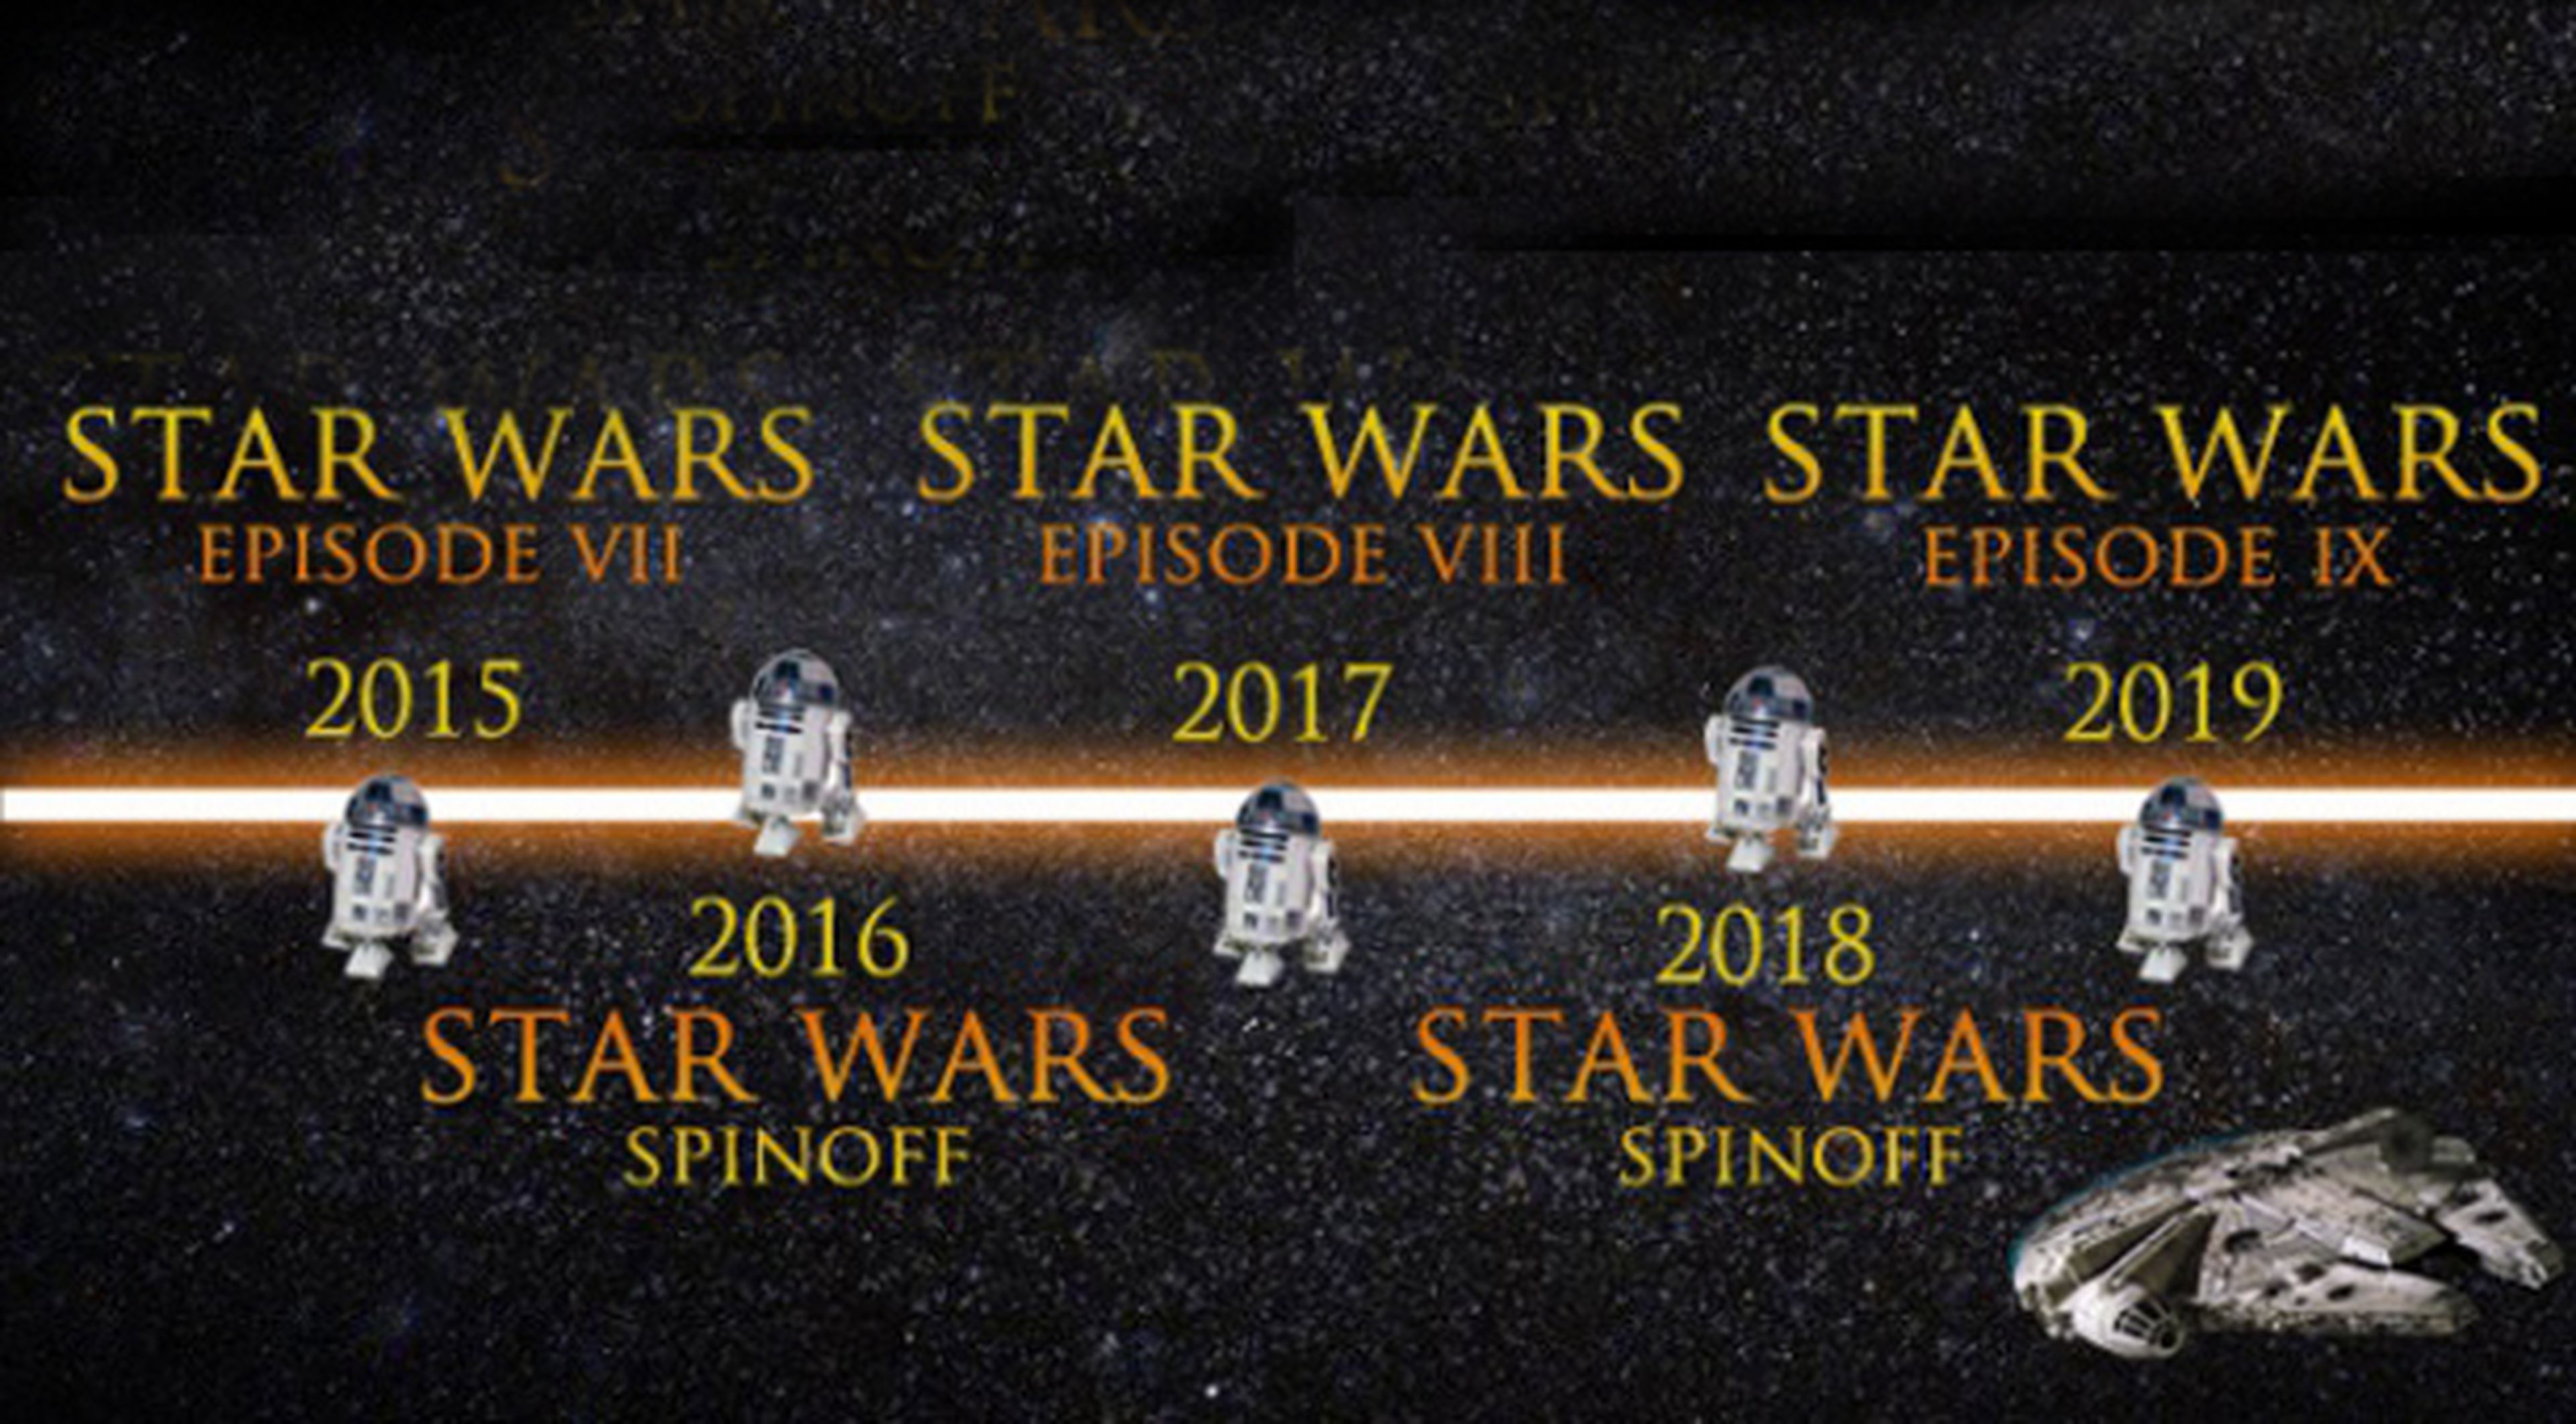 Se filtra la descripción del tráiler de Star Wars VII: The Force Awakens